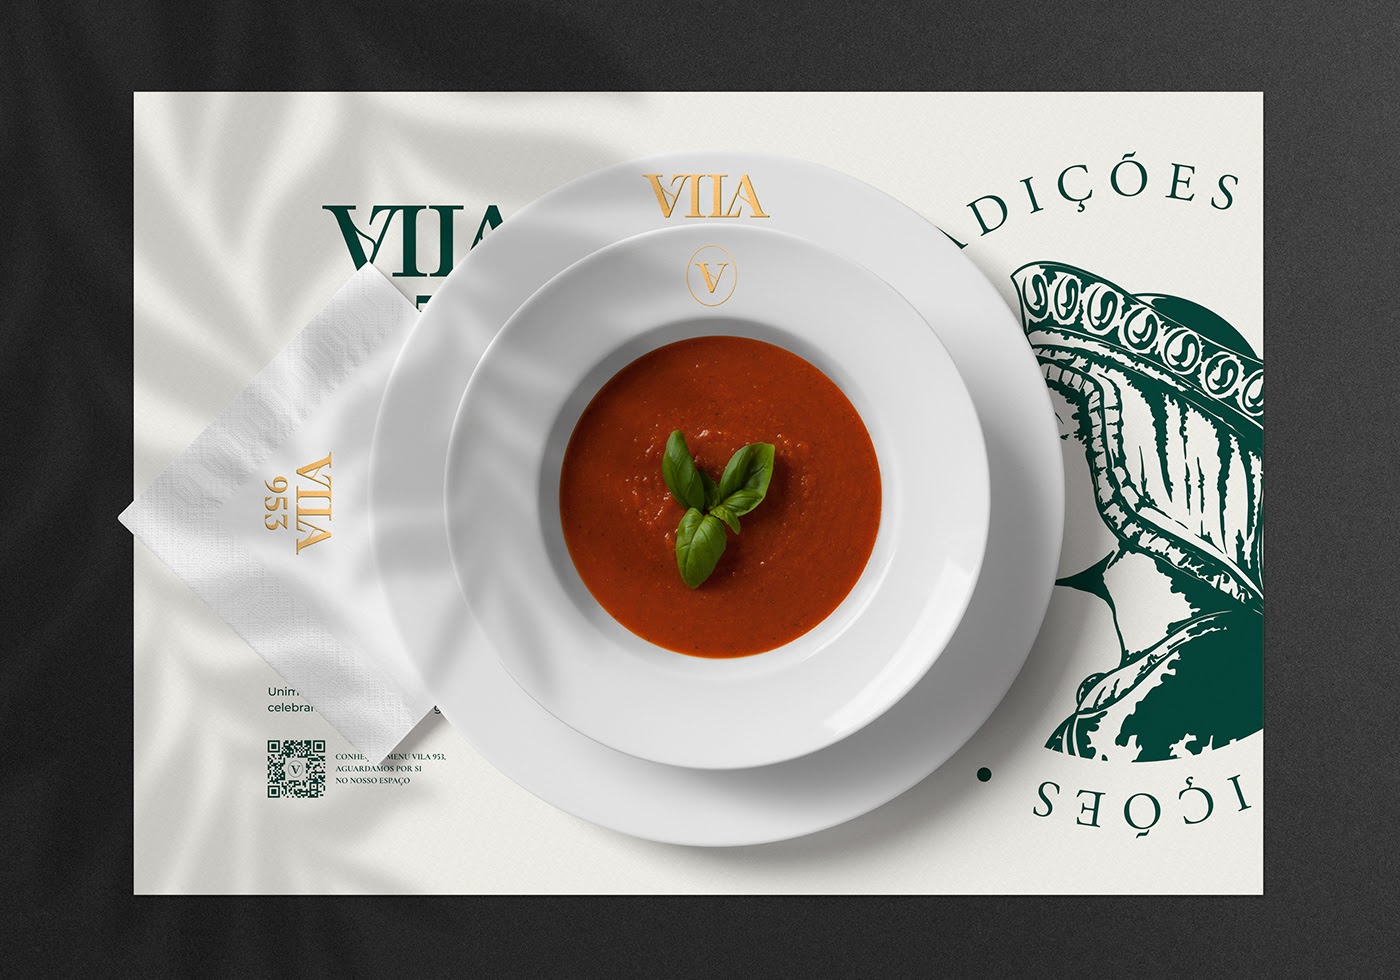 Vila 953餐厅品牌视觉设计